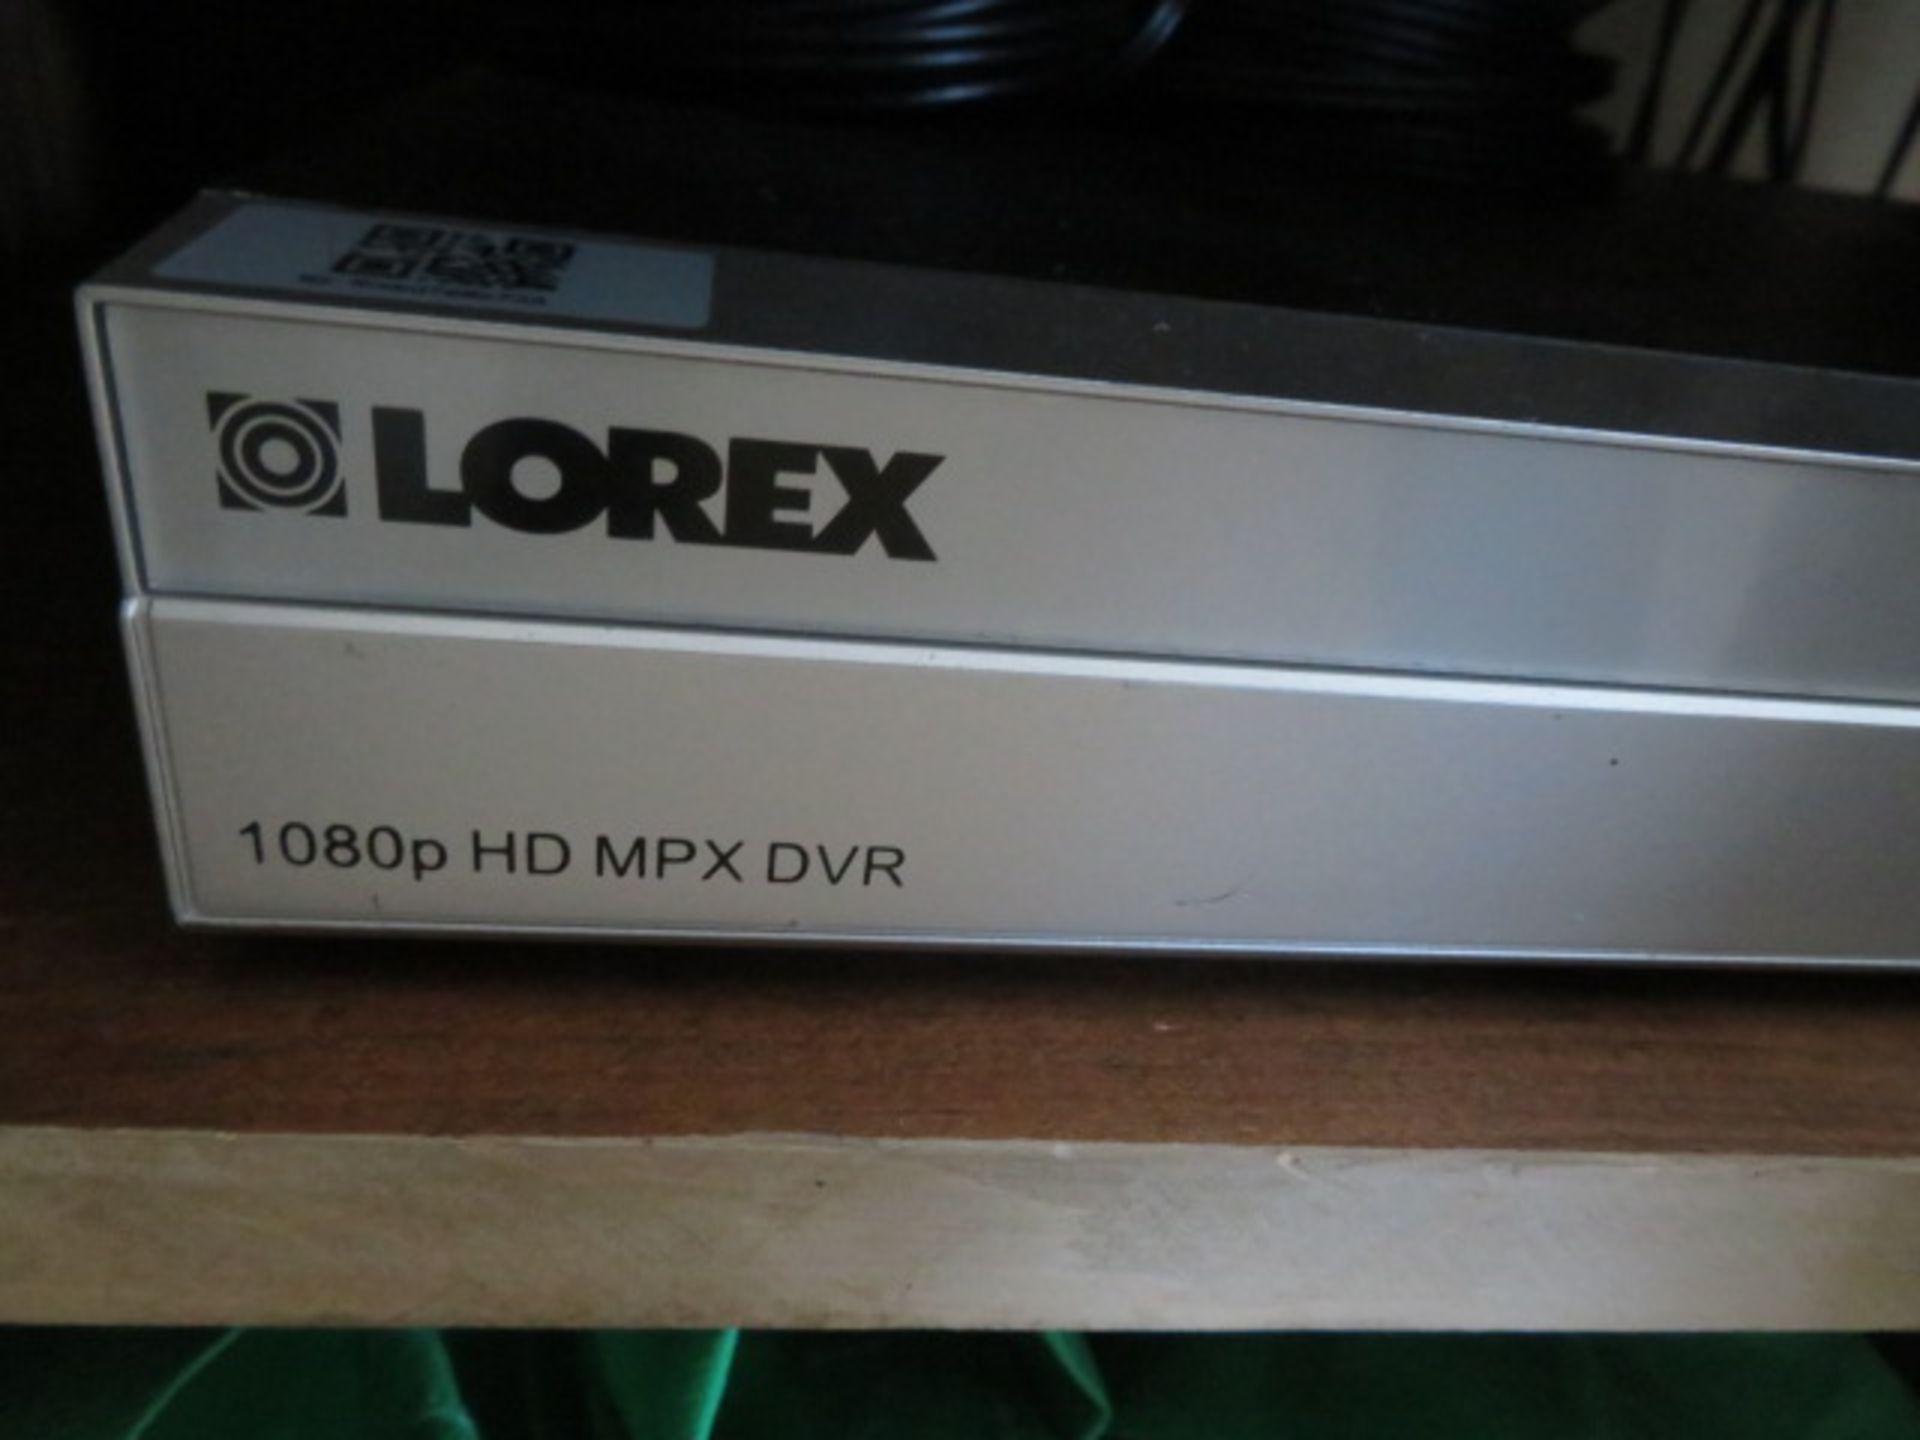 LOREX HD MPX DVR 1080P W/(6) INDOOR OUTDOOR CAMERAS (Located - Mays Landing, NJ) - Image 2 of 5